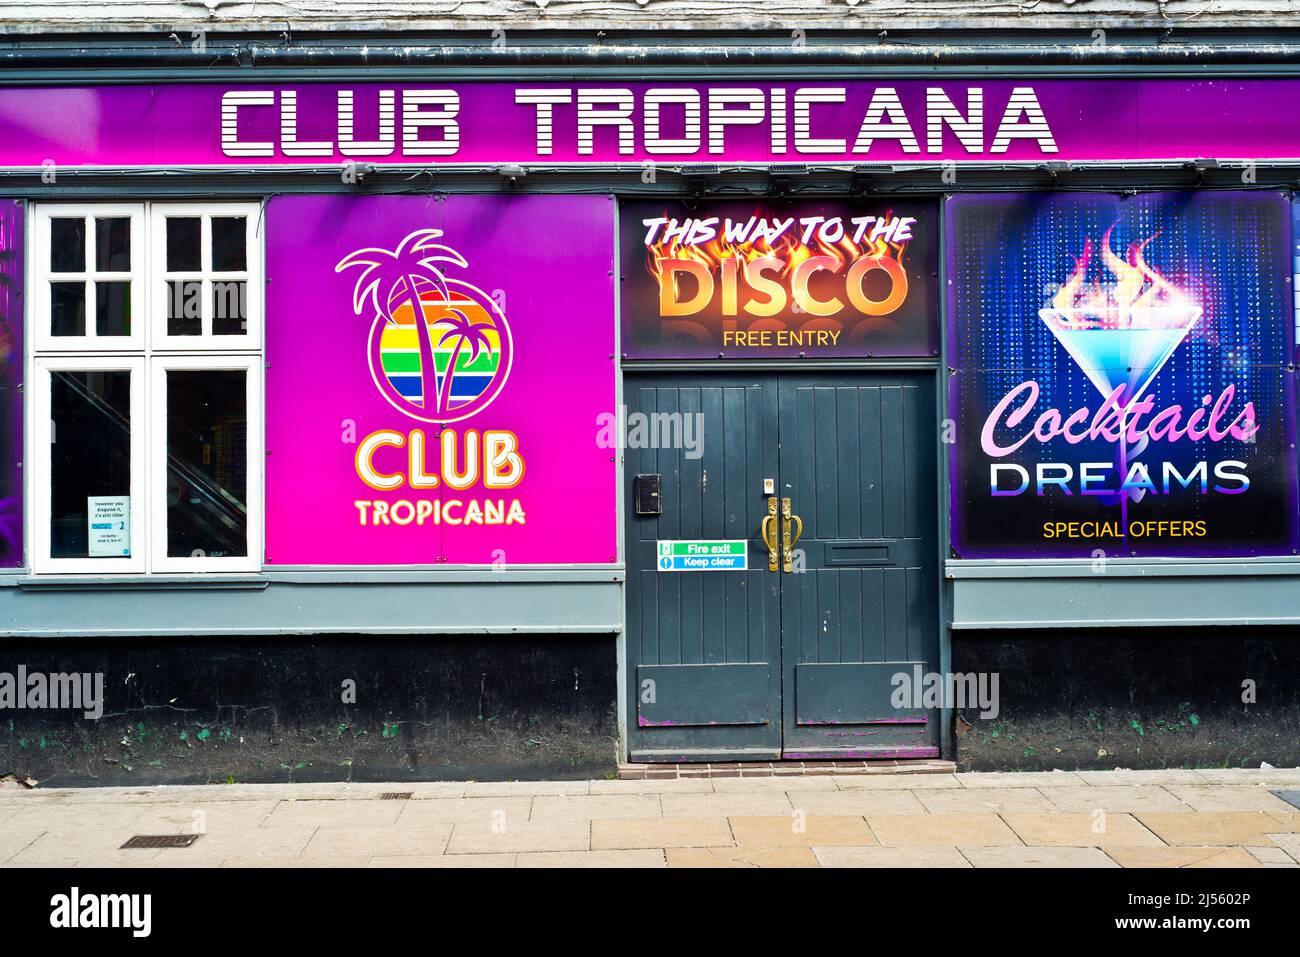 Club Tropicana, Sackville street, Manchester, England Stock Photo